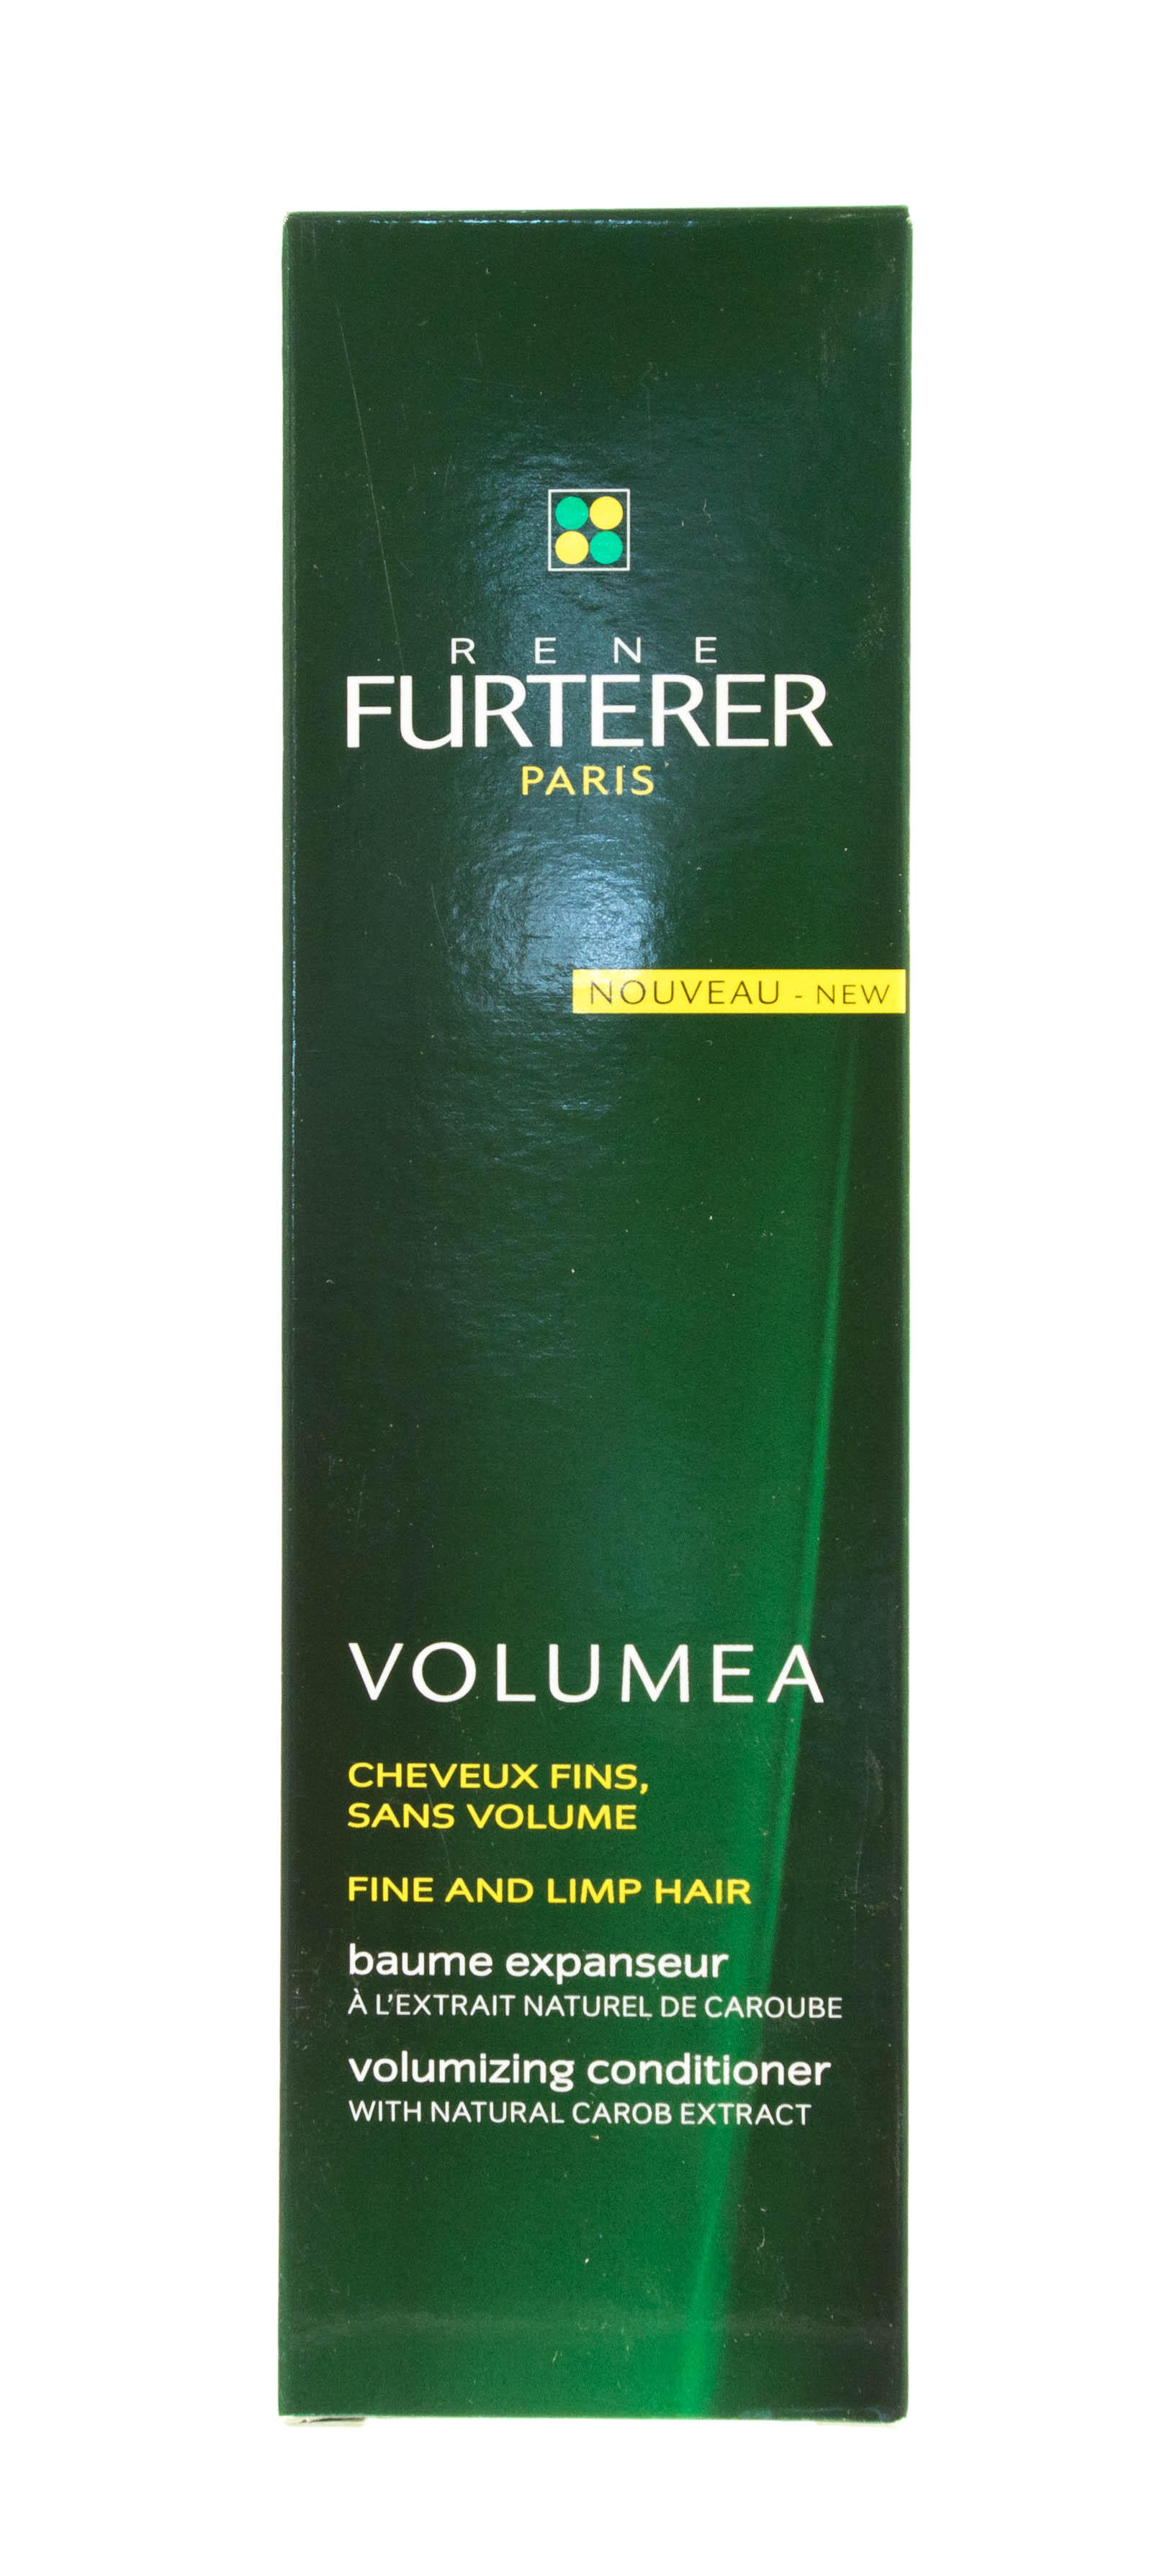 Rene Furterer Volumea Для Объема Волос Бальзам для объёма волос 150 мл (Rene Furterer, Volumea)